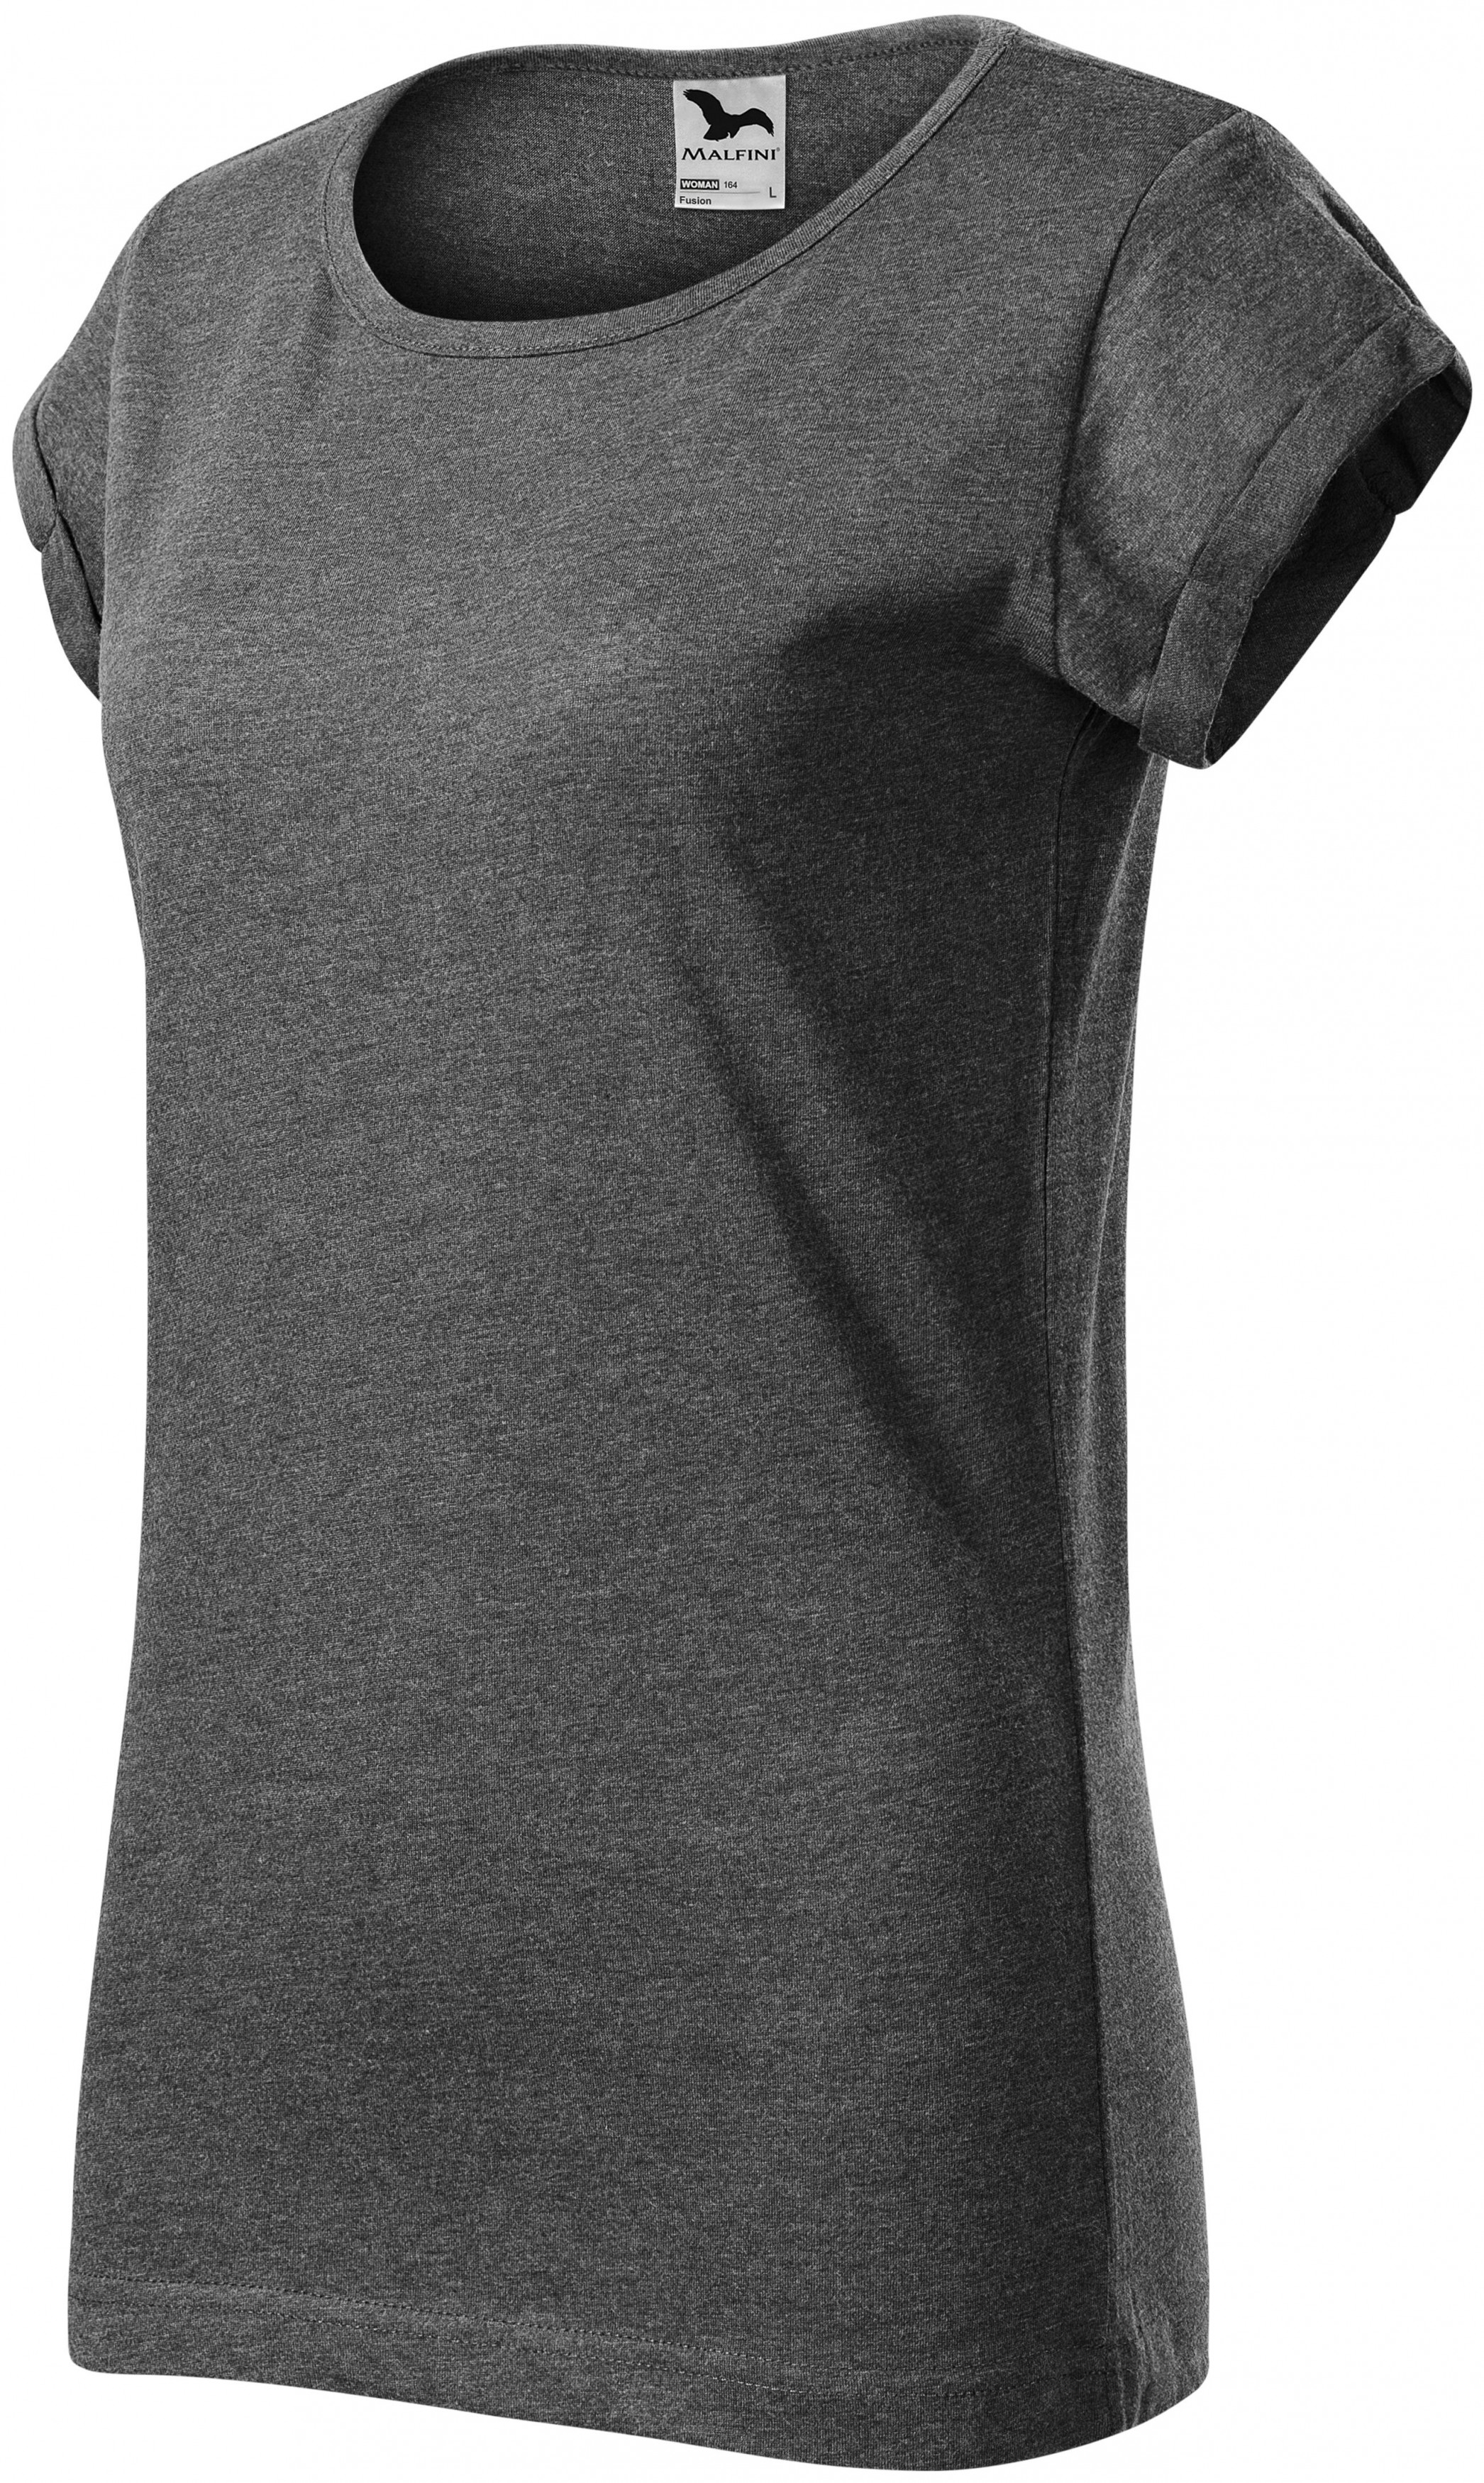 Dámske tričko s vyhrnutými rukávmi, čierny melír, 2XL